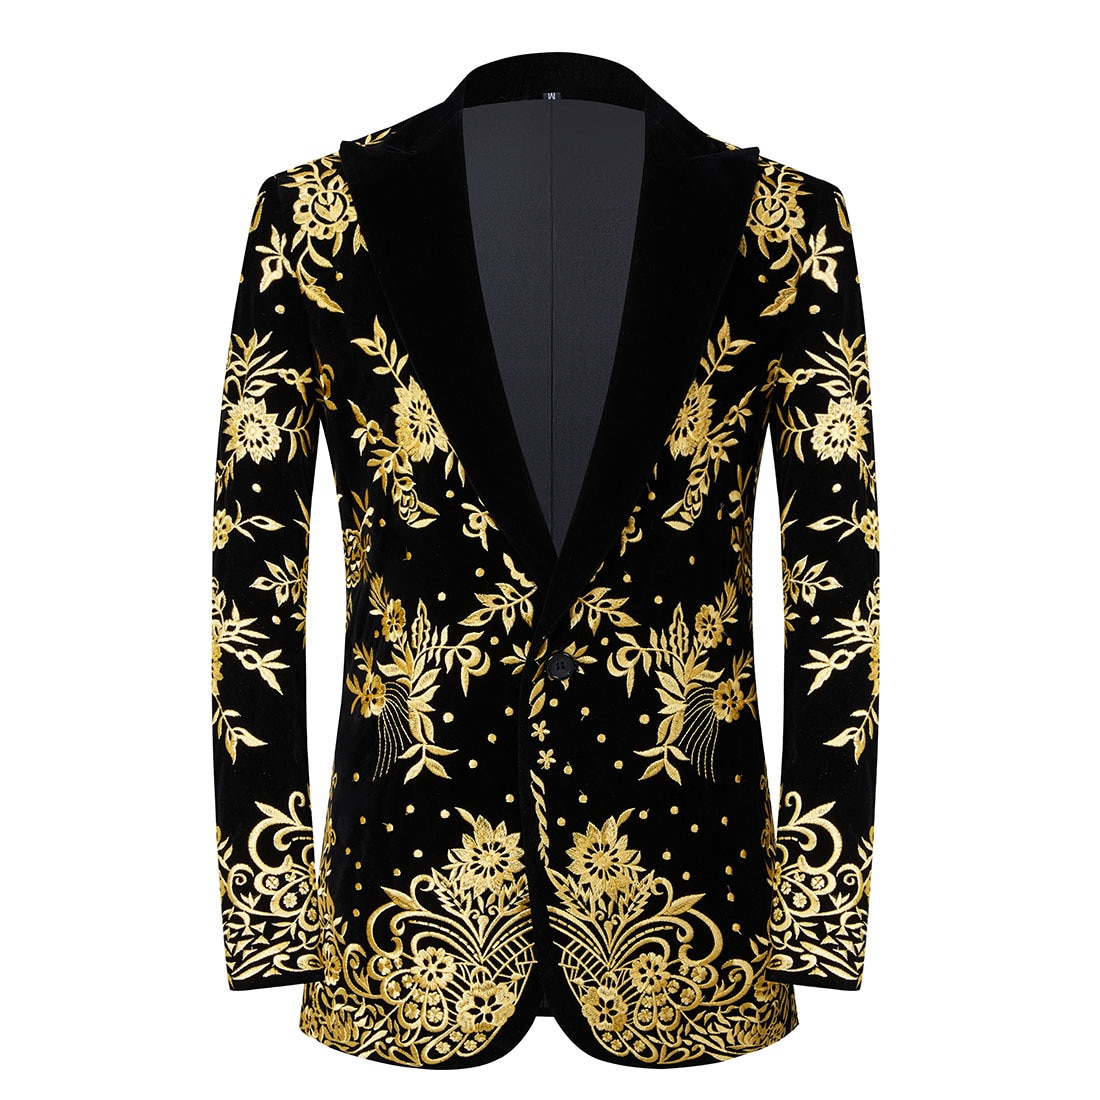 Men's Gold Floral Embroidery Dress Suit Jacket Lapel Collar Velvet Slim Fit Wedding Tuxedo Blazer Banquet Host Party Costume